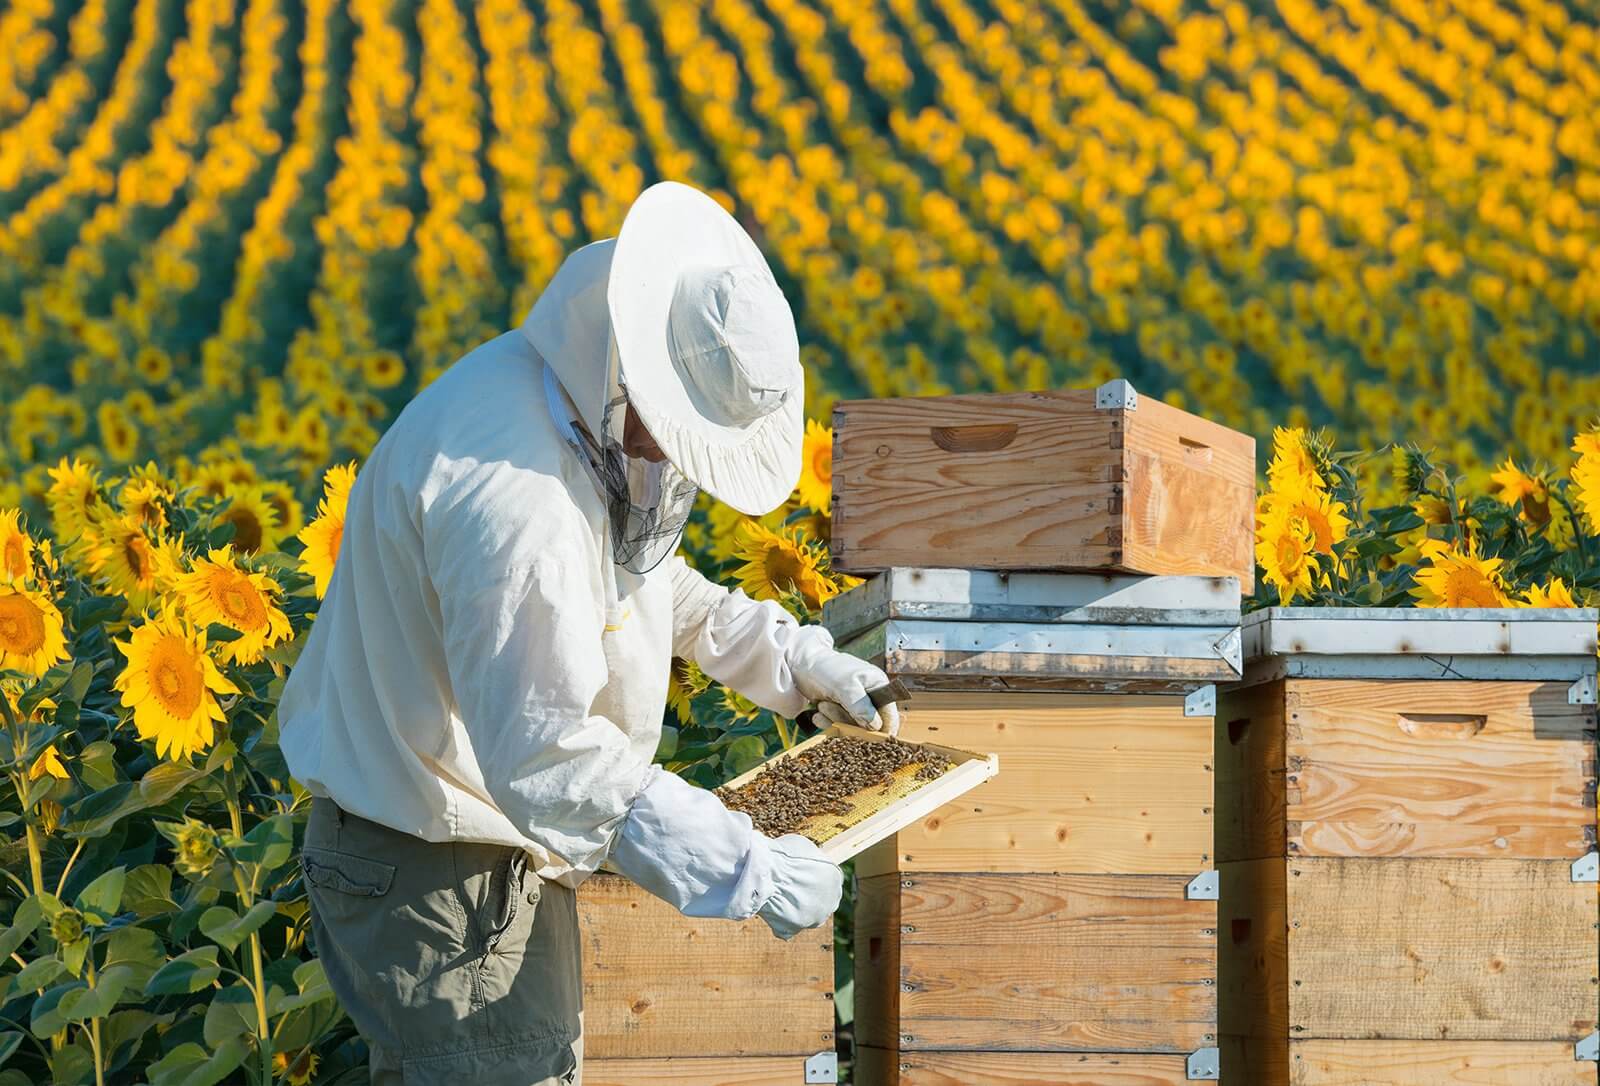 Już wkrótce ruszają trzy interwencje pszczelarskie